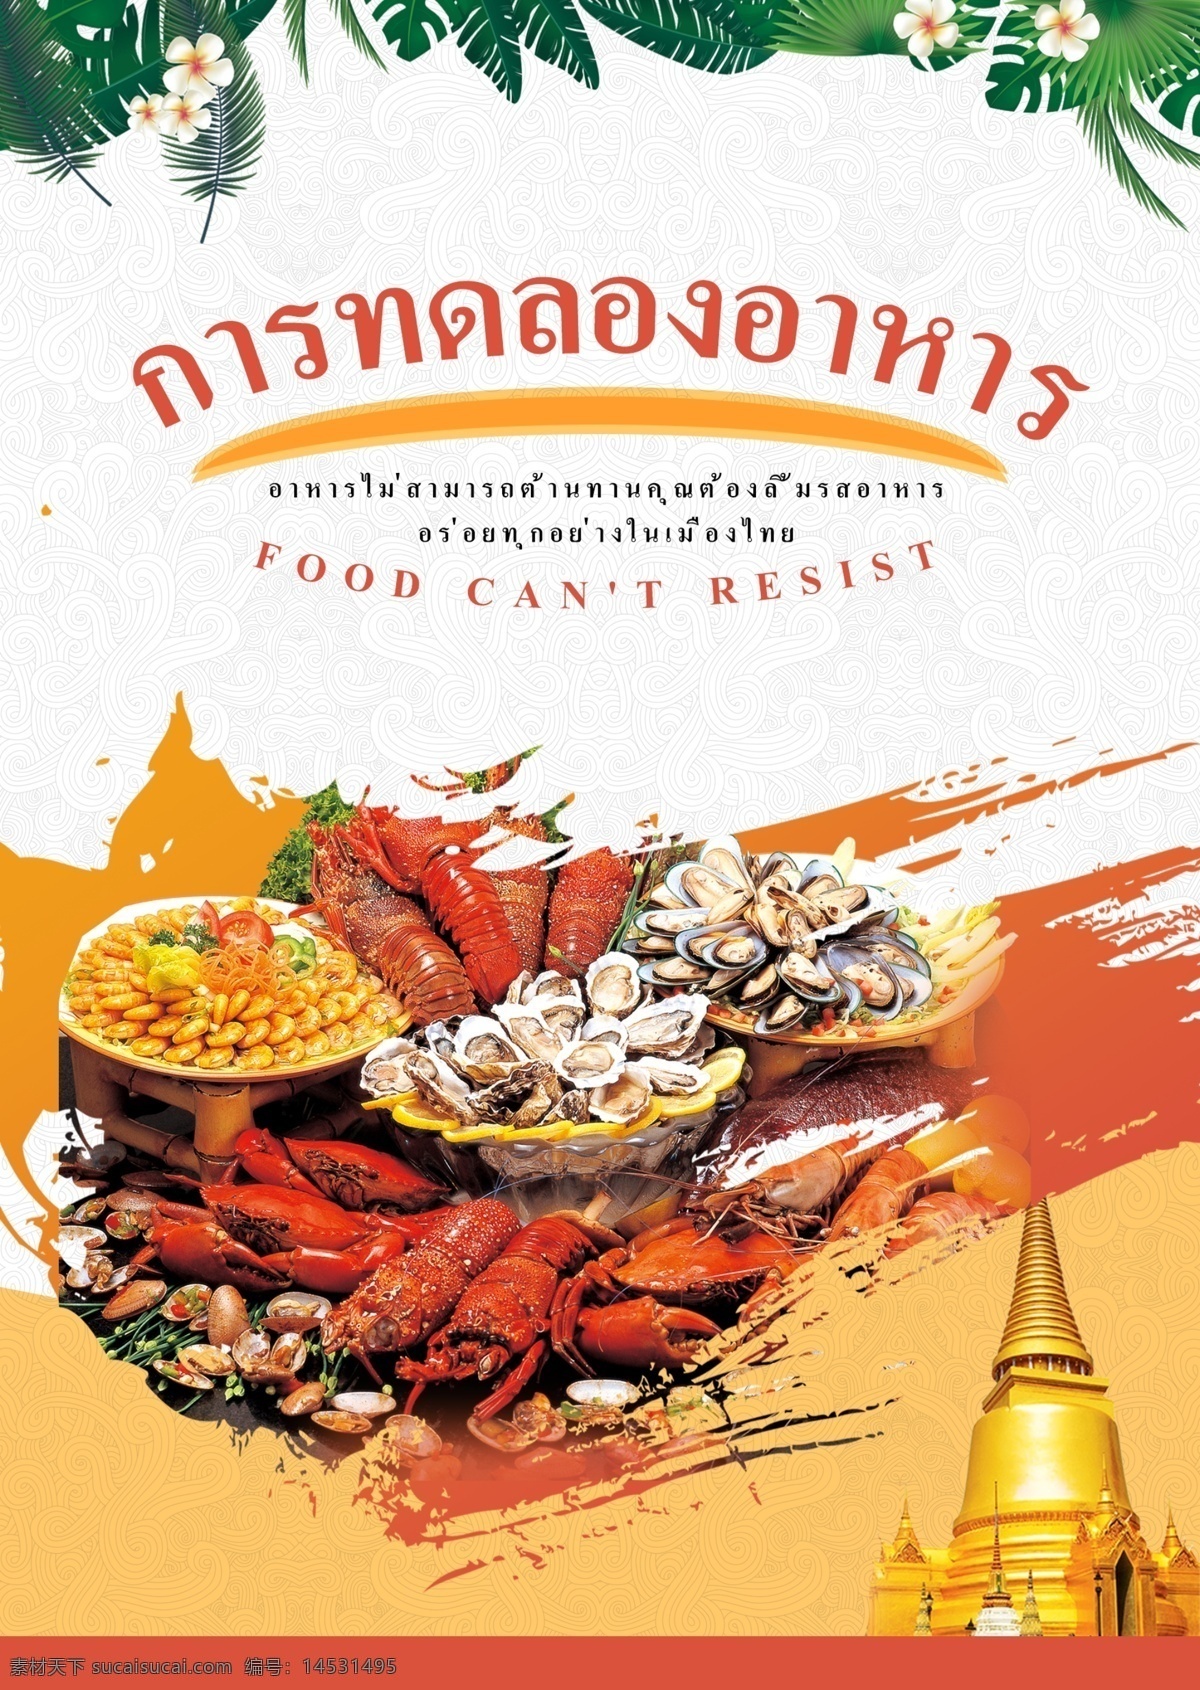 食物海报 食物 海报 实验 节日 食品 海鲜 橙色 白色